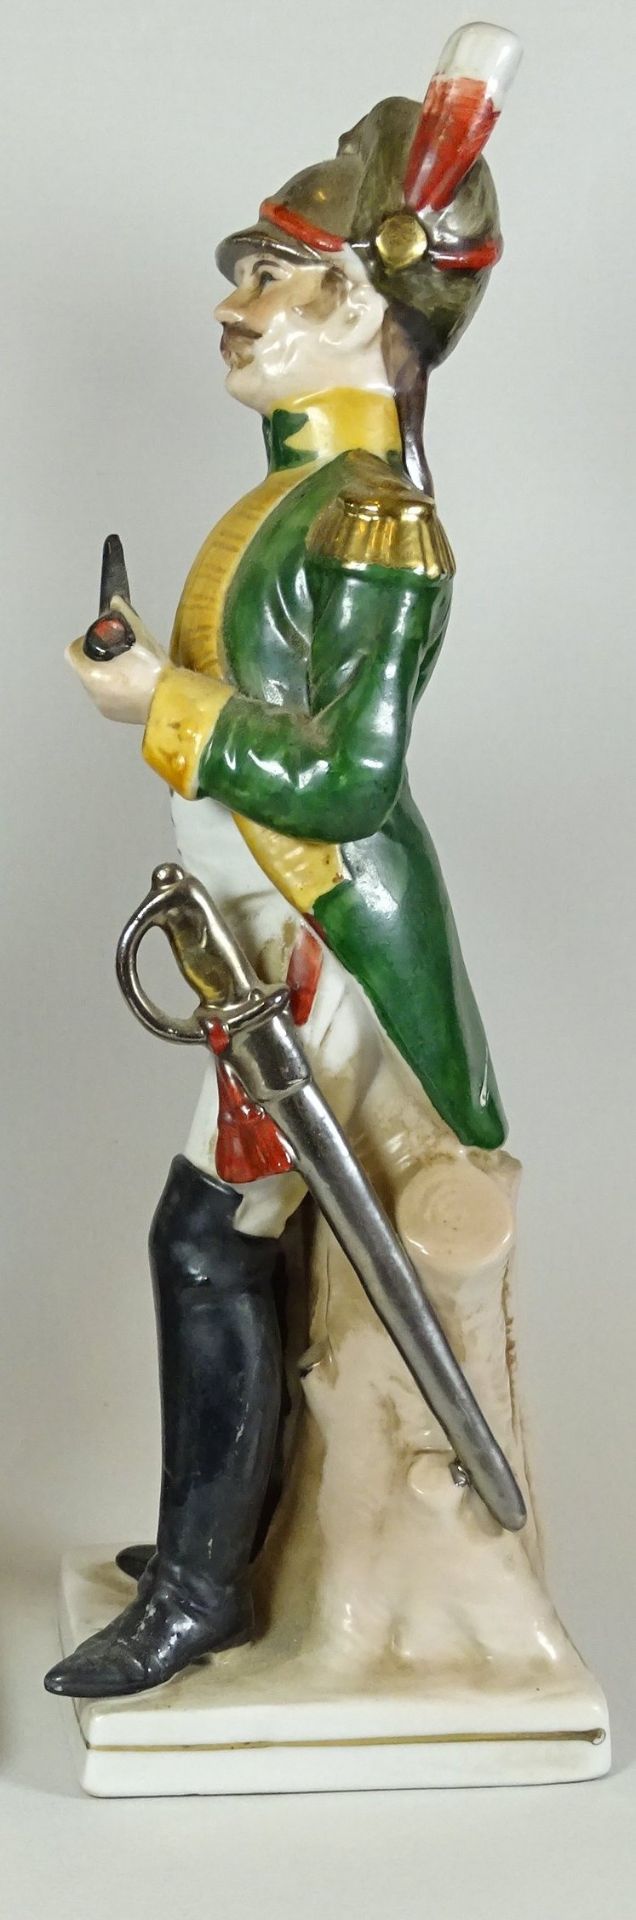 Offizier Figur mit Pfeife,ungemarkt, H. 25cm,Alters- und Gebrauchsspuren - Bild 3 aus 4